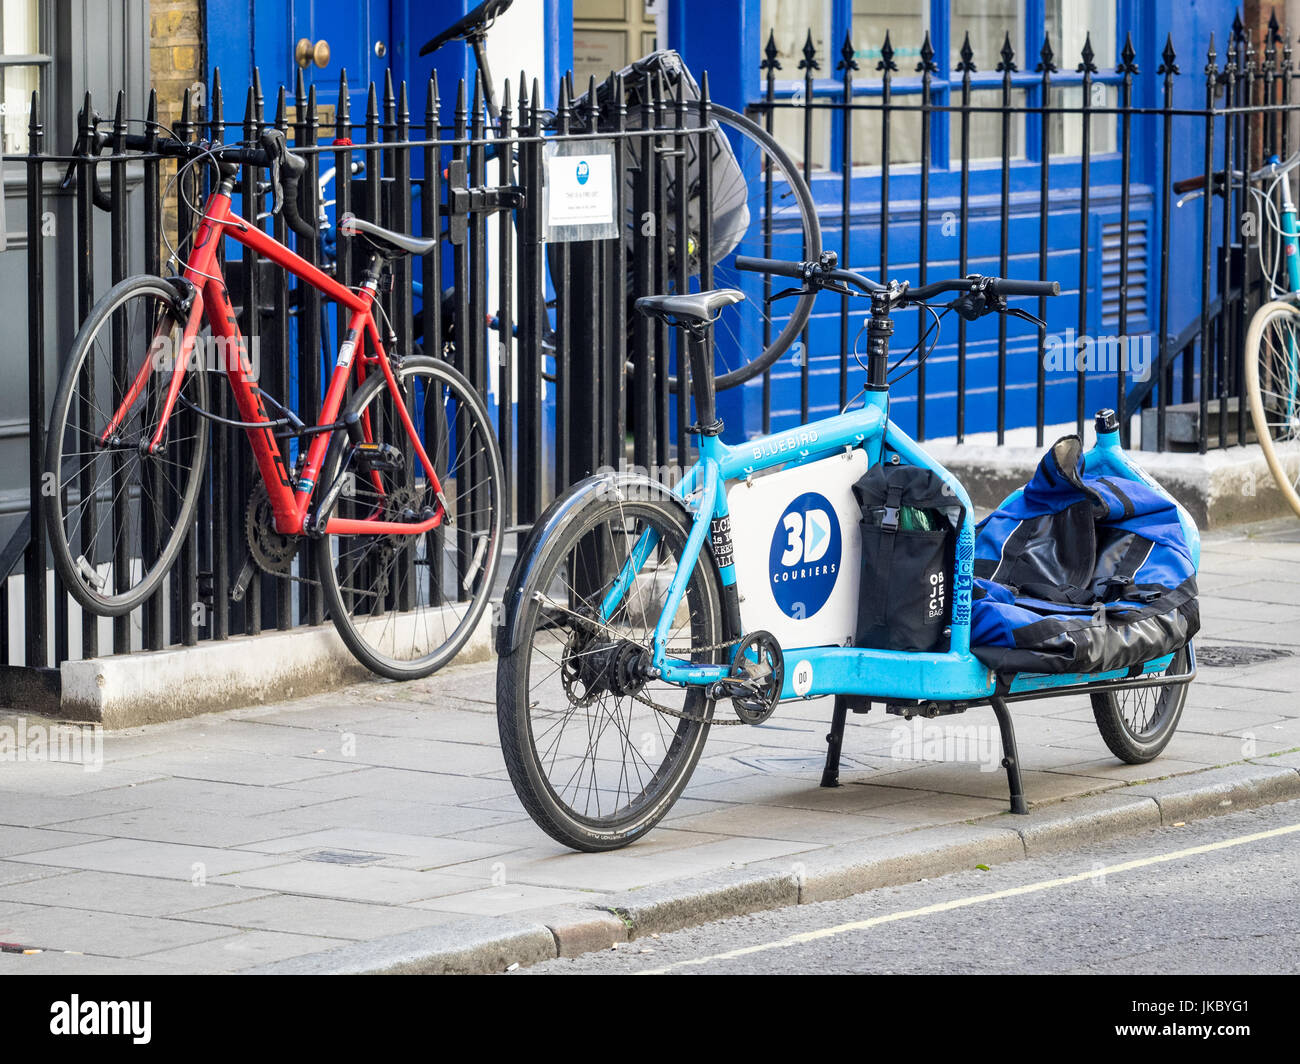 Les Couriers 3D Vélo Cargo stationné dans une rue dans le centre de Londres, UK Banque D'Images